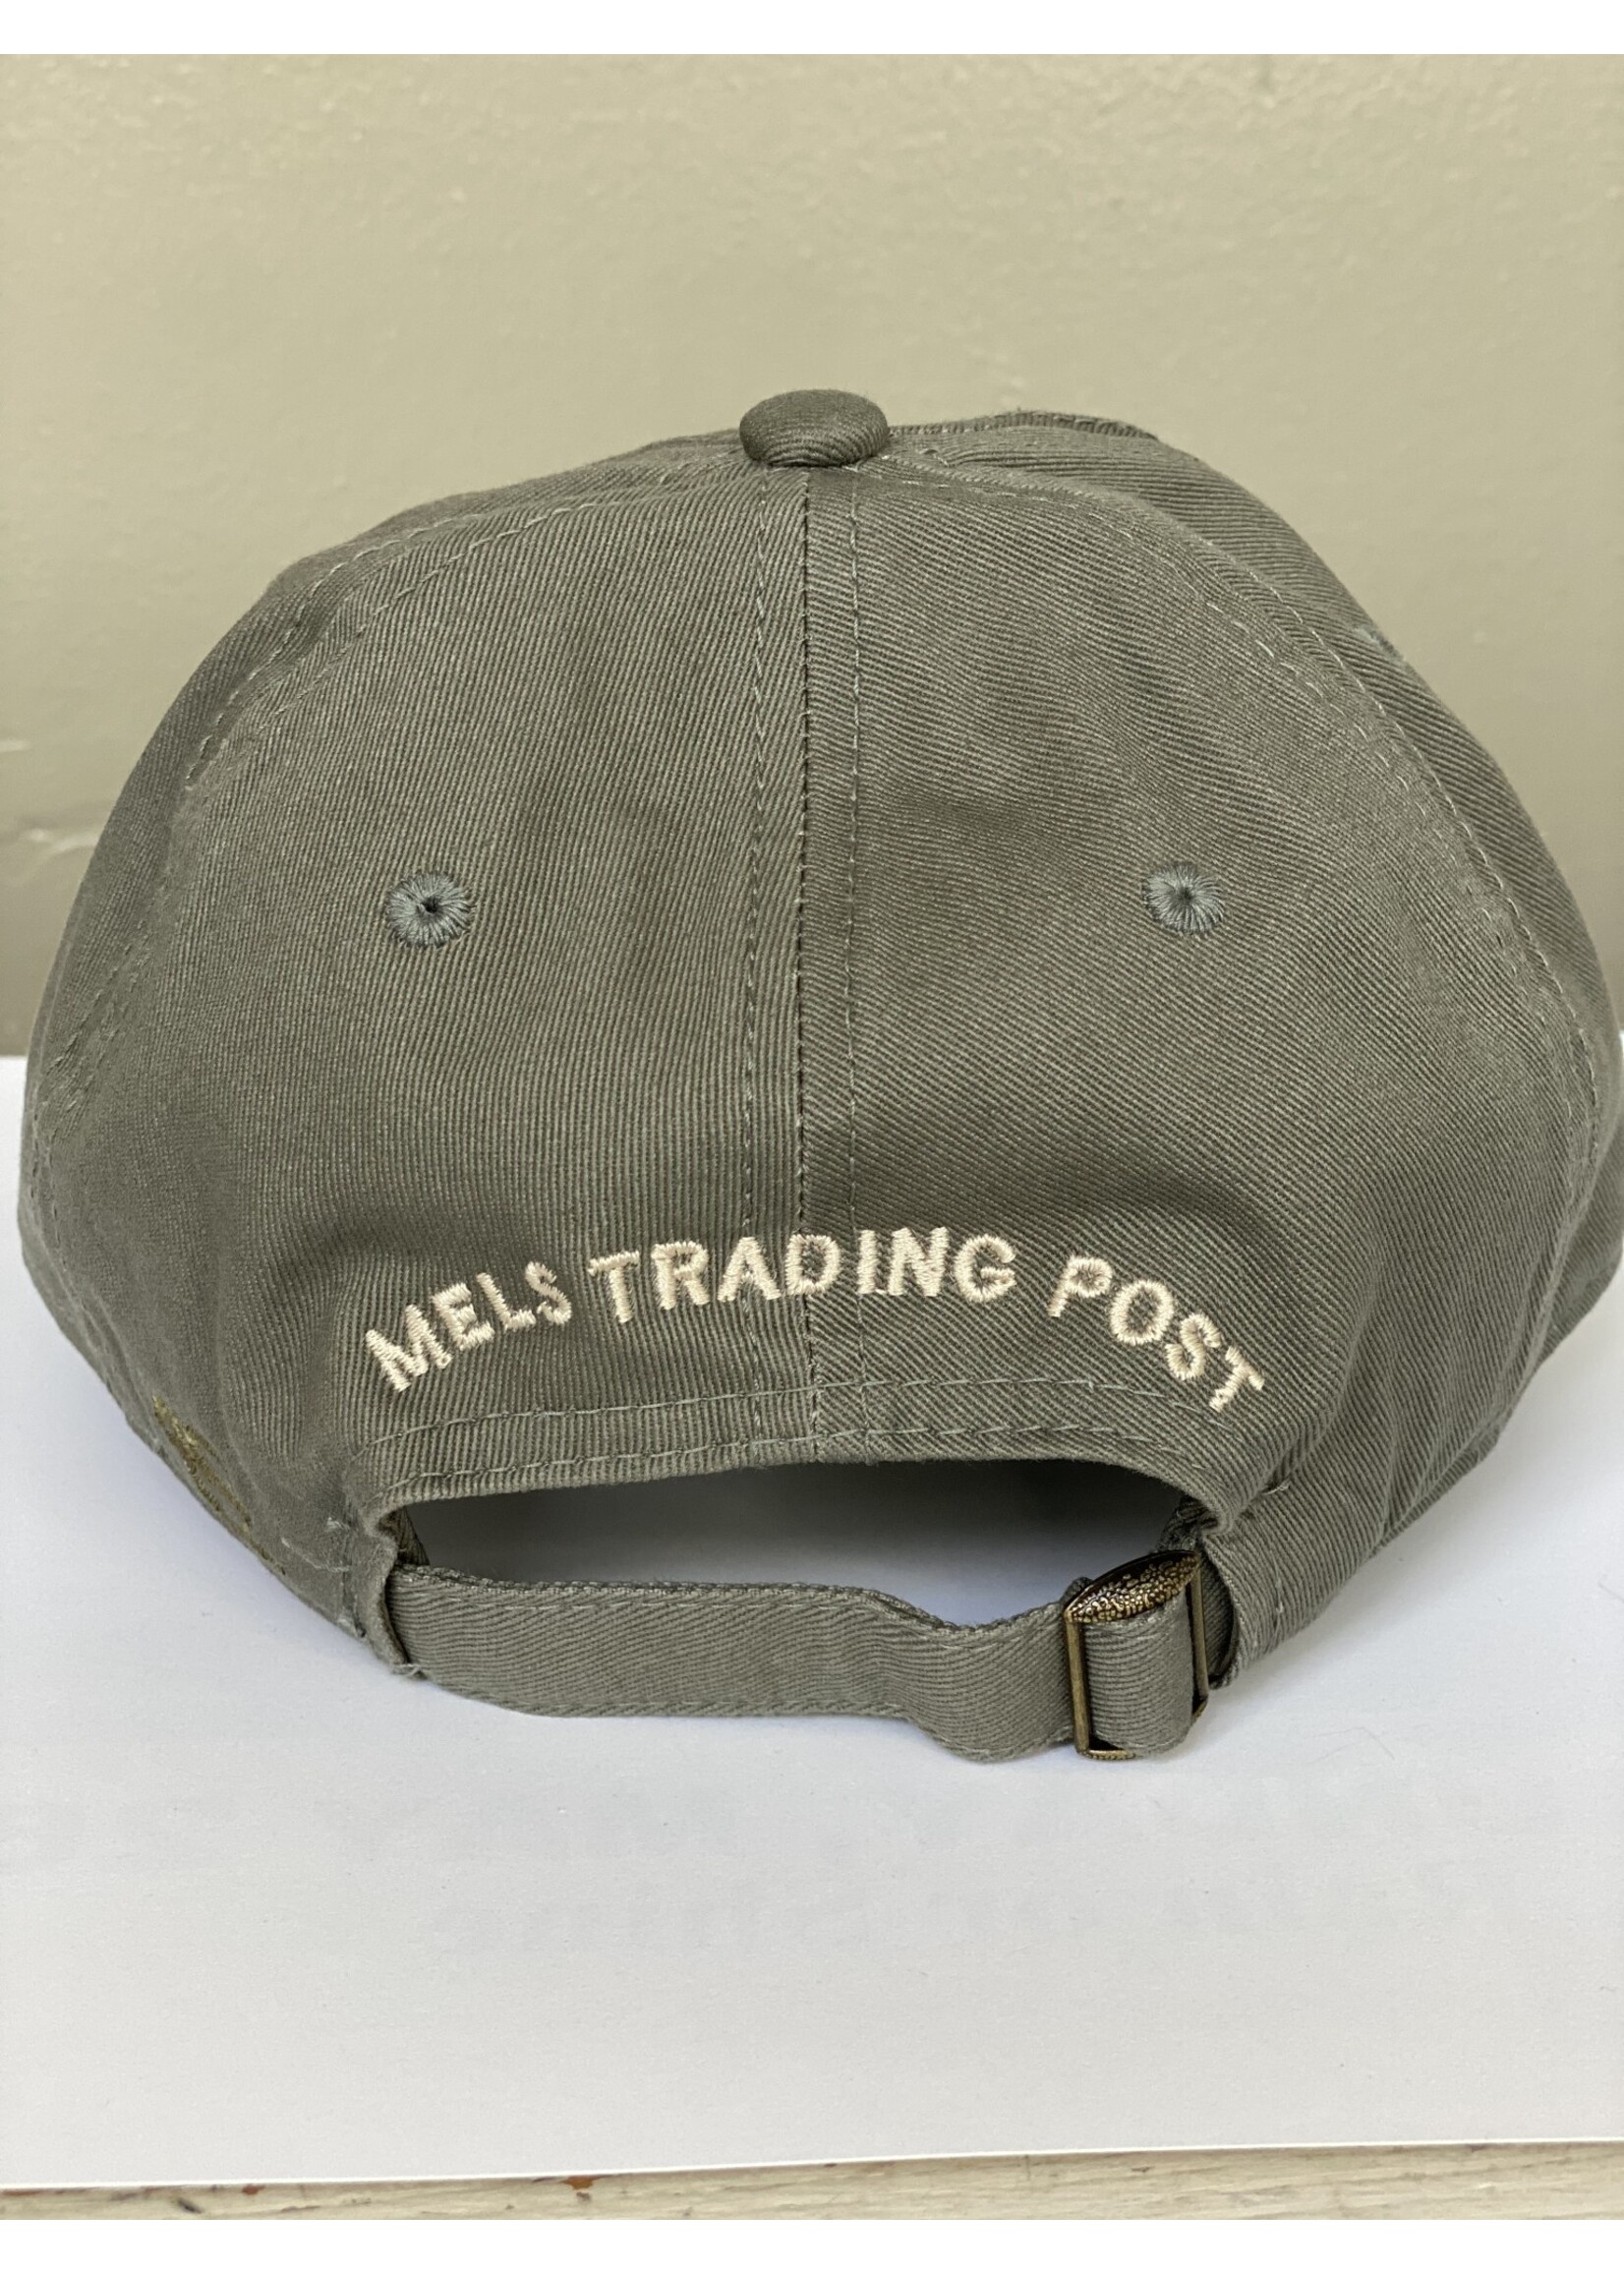 Mel's! Mels Trading Post Script Hat